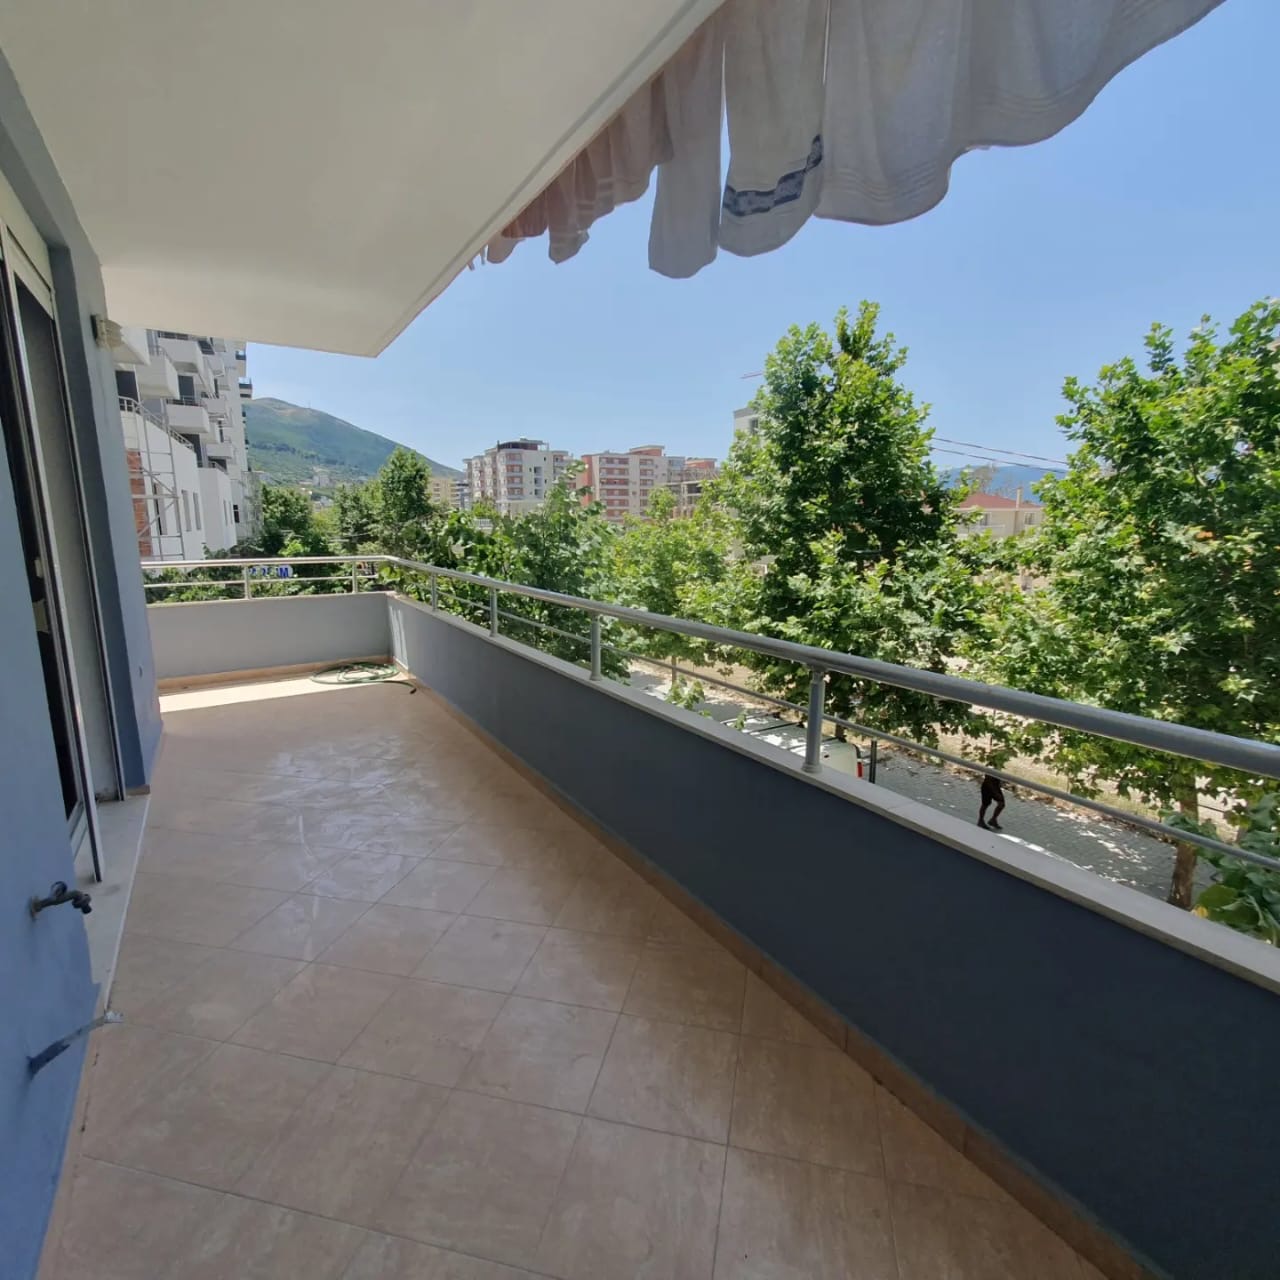 Foto e Apartment në shitje Lungomare, Vlorë